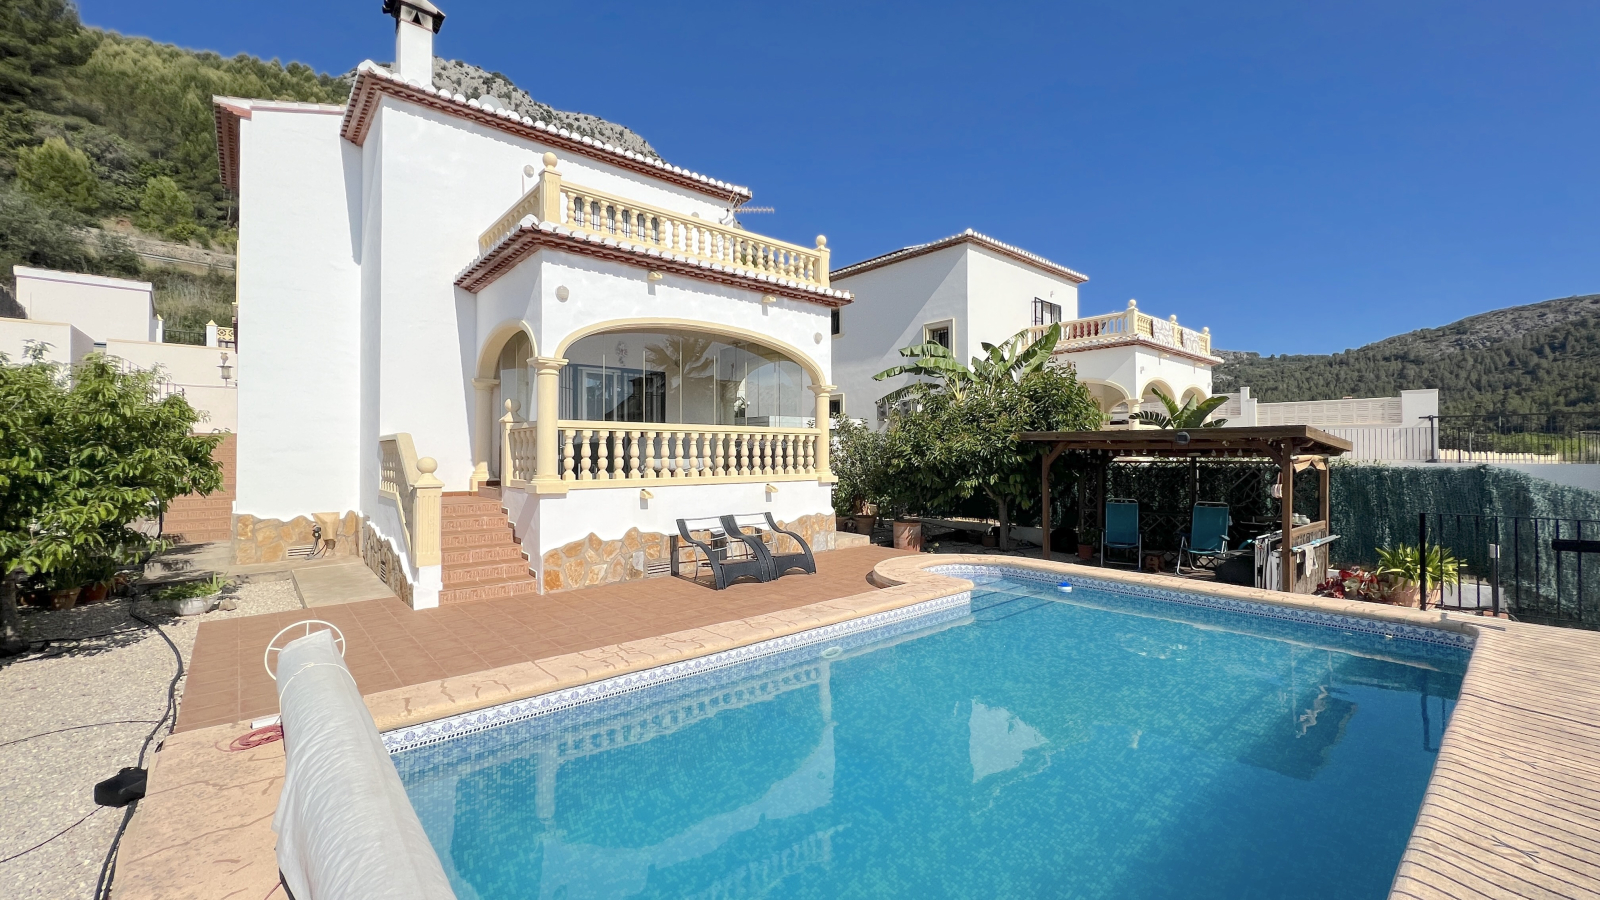 Villa méditerranéenne de 3 chambres à coucher avec des accents modernes près de Denia.